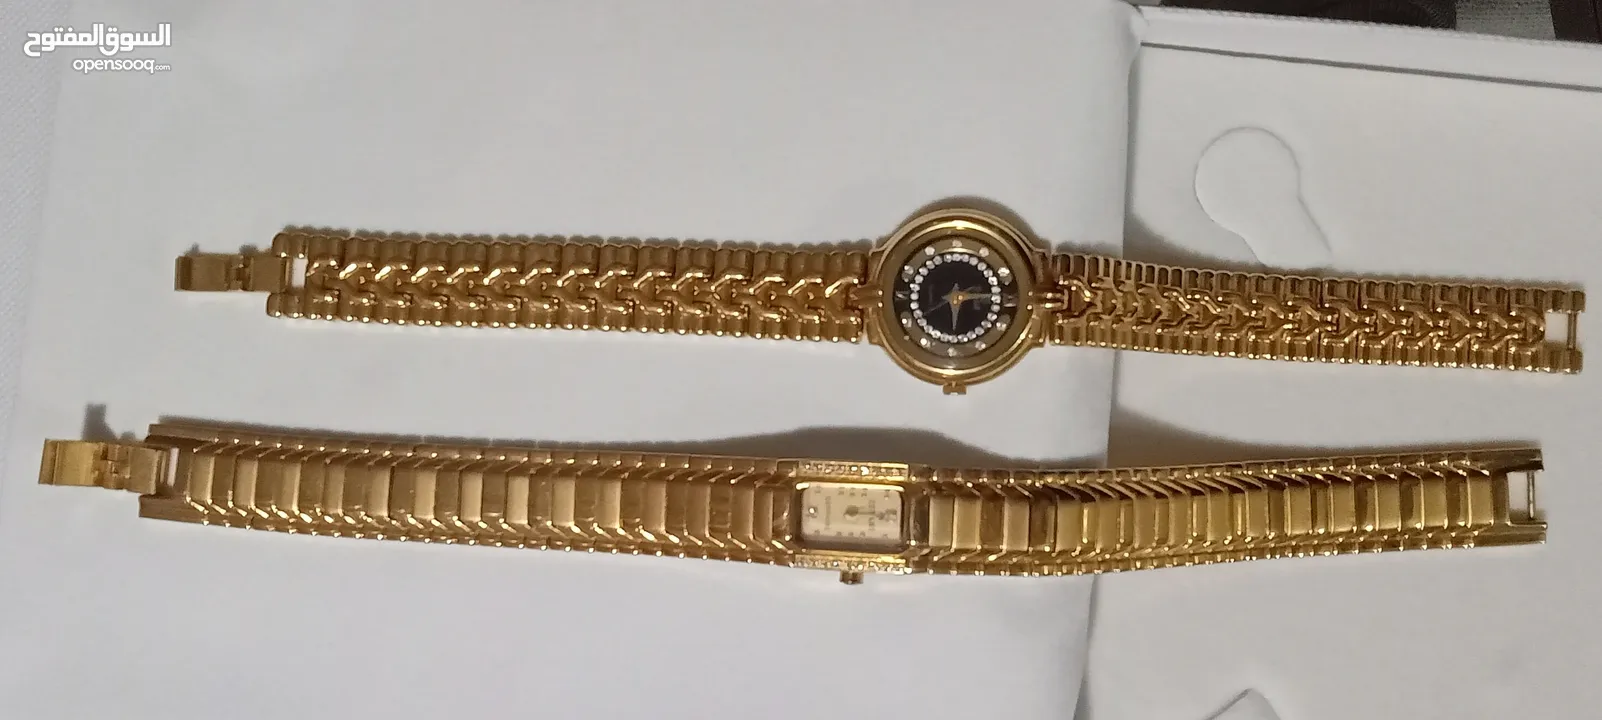 ساعة حريمى  swistar  18k  gold لم تستخدم محتاجة حجر من  35 سنة بنفس الشكل   10 الاف جنيه